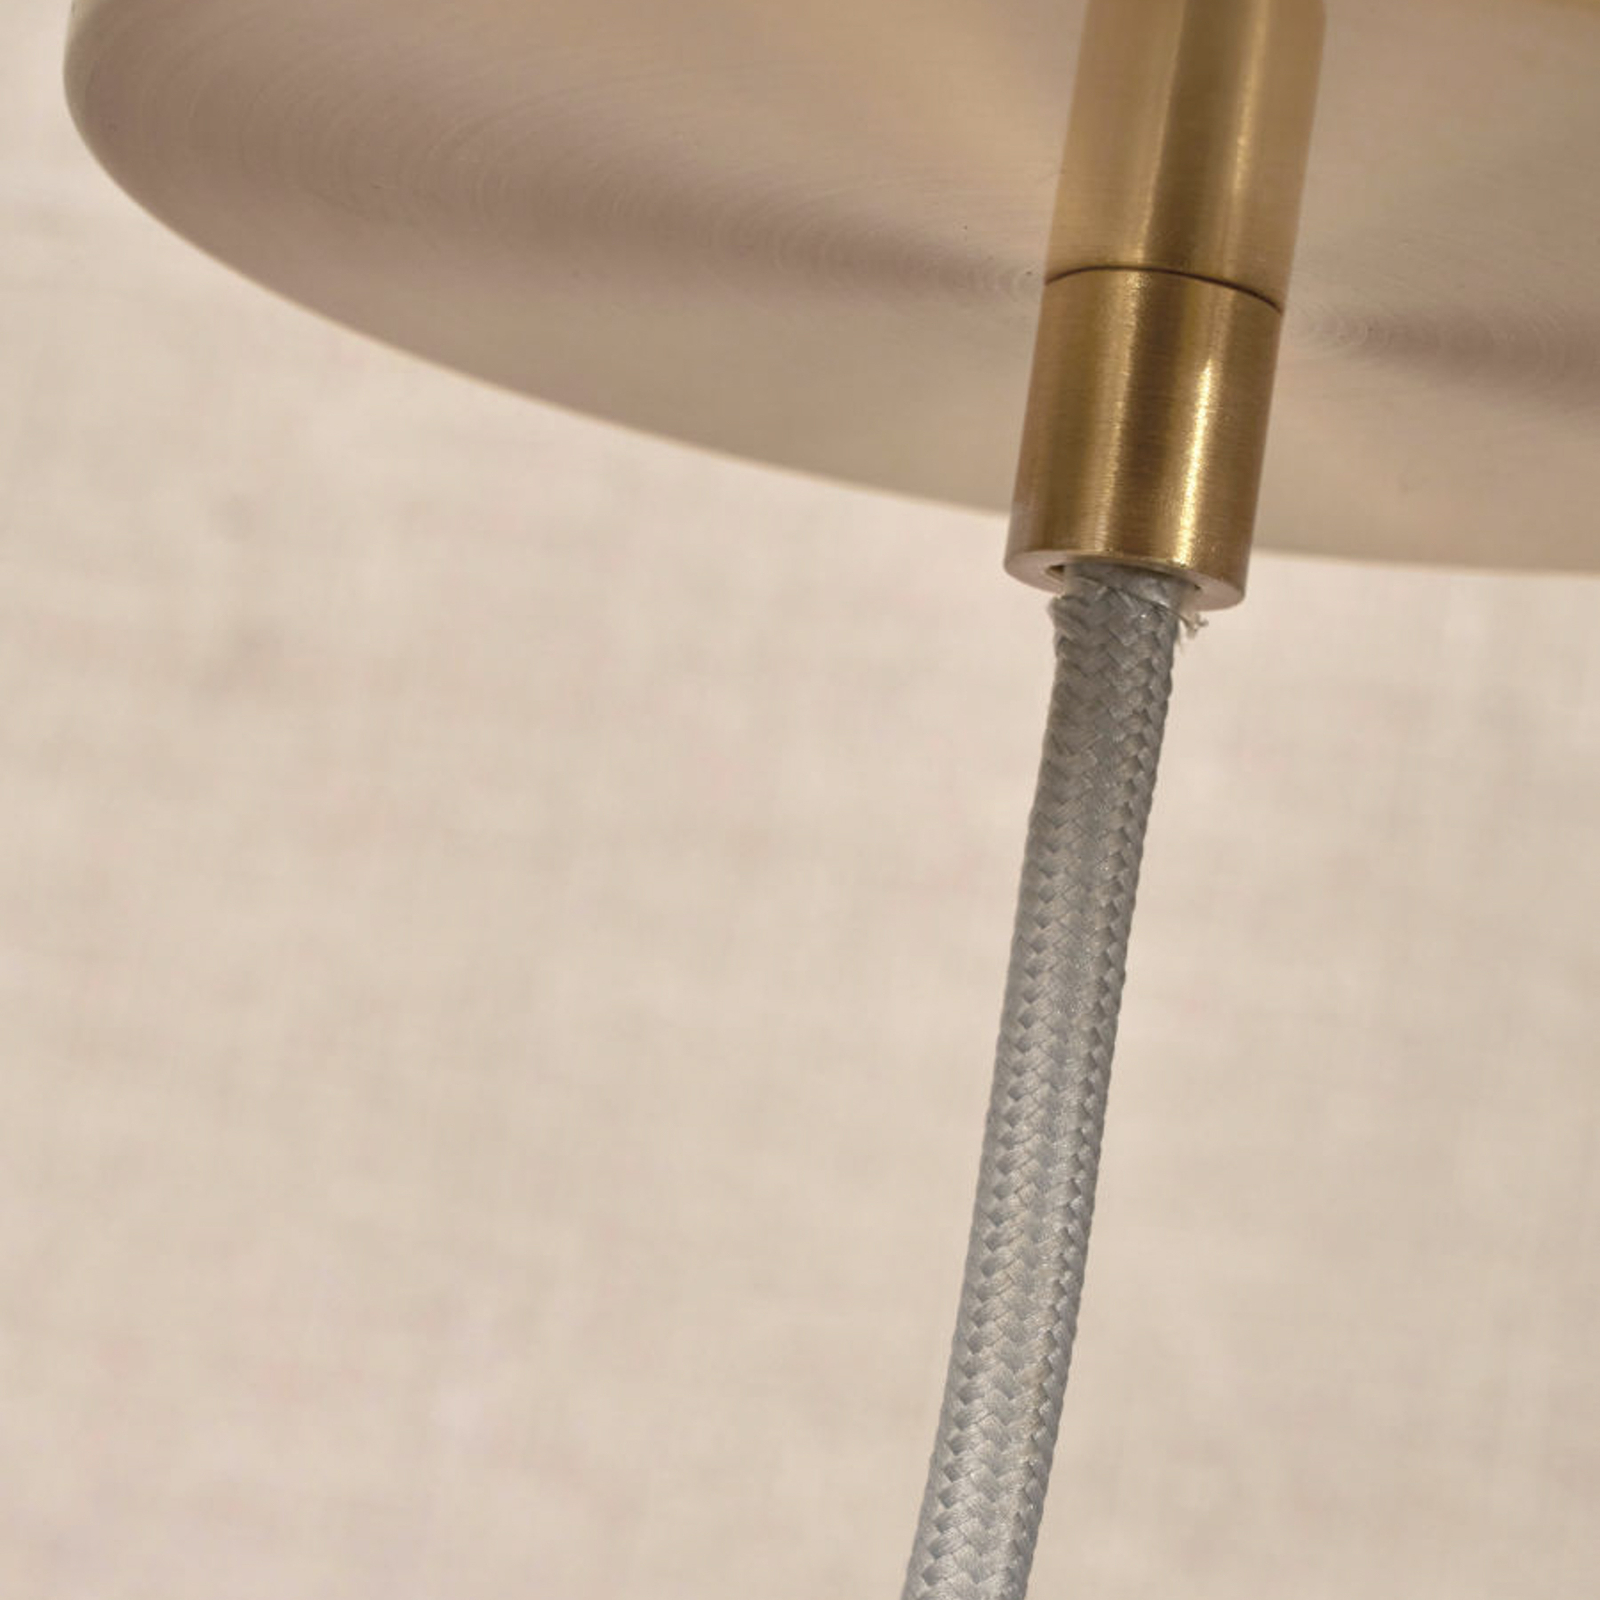 Het gaat om Romi Carrara hanglamp 1-lamp Ø 28cm